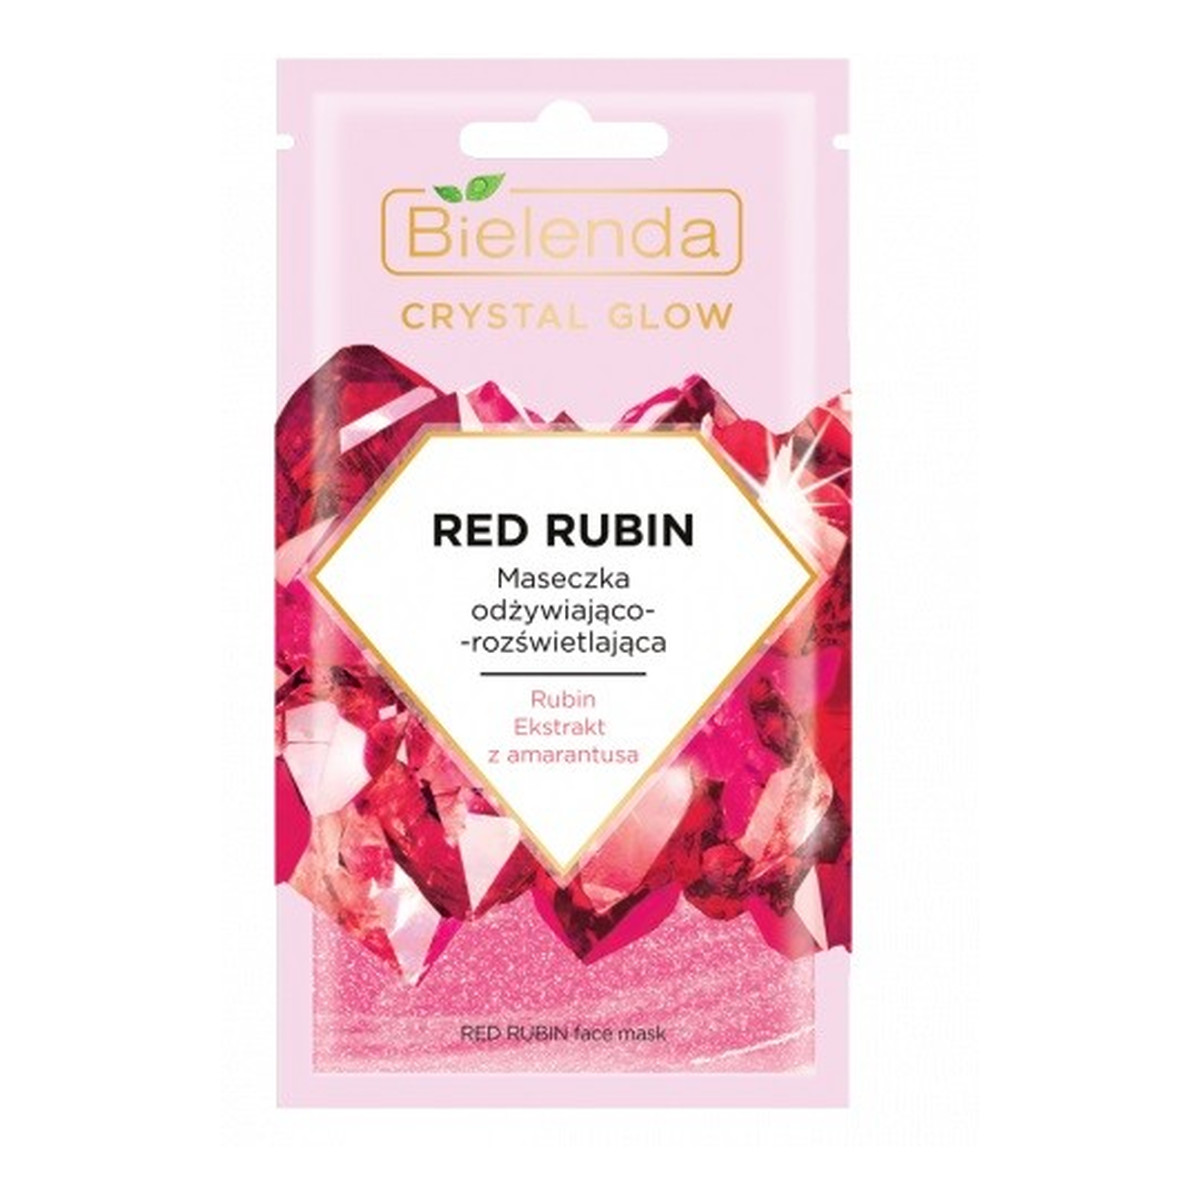 Bielenda Crystal Glow Red Rubin Maseczka odżywiająco-rozświetlająca 8g